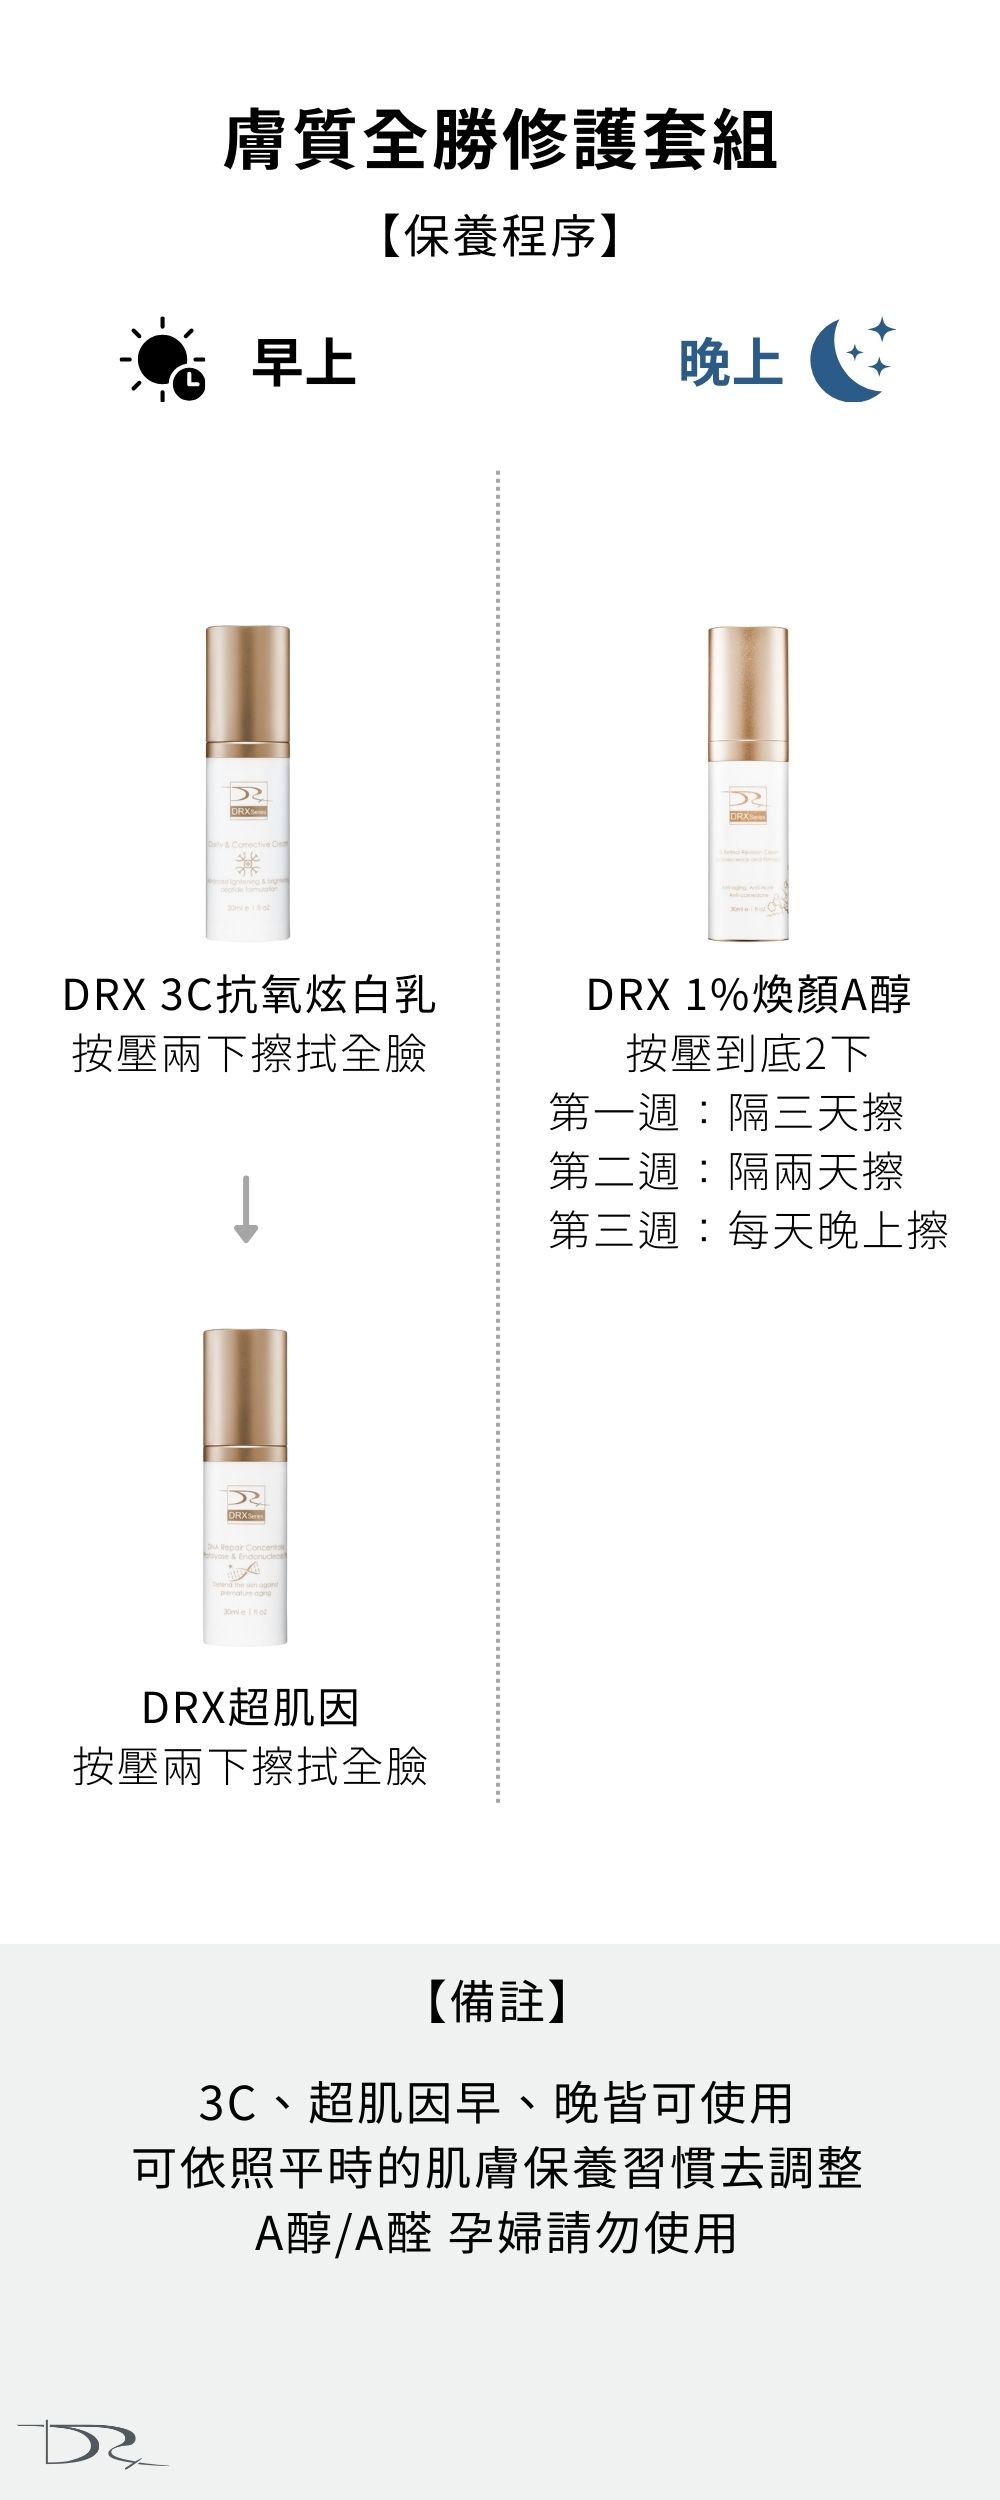 DRX達特仕給您最好的煥膚產品，DRX達特仕的膚質全勝修護套組，促進膠原蛋白生長，延緩衰老、改善膚質，青春痘肌膚、粉刺肌膚、皮膚暗沈、毛孔粗大及細紋都適用！